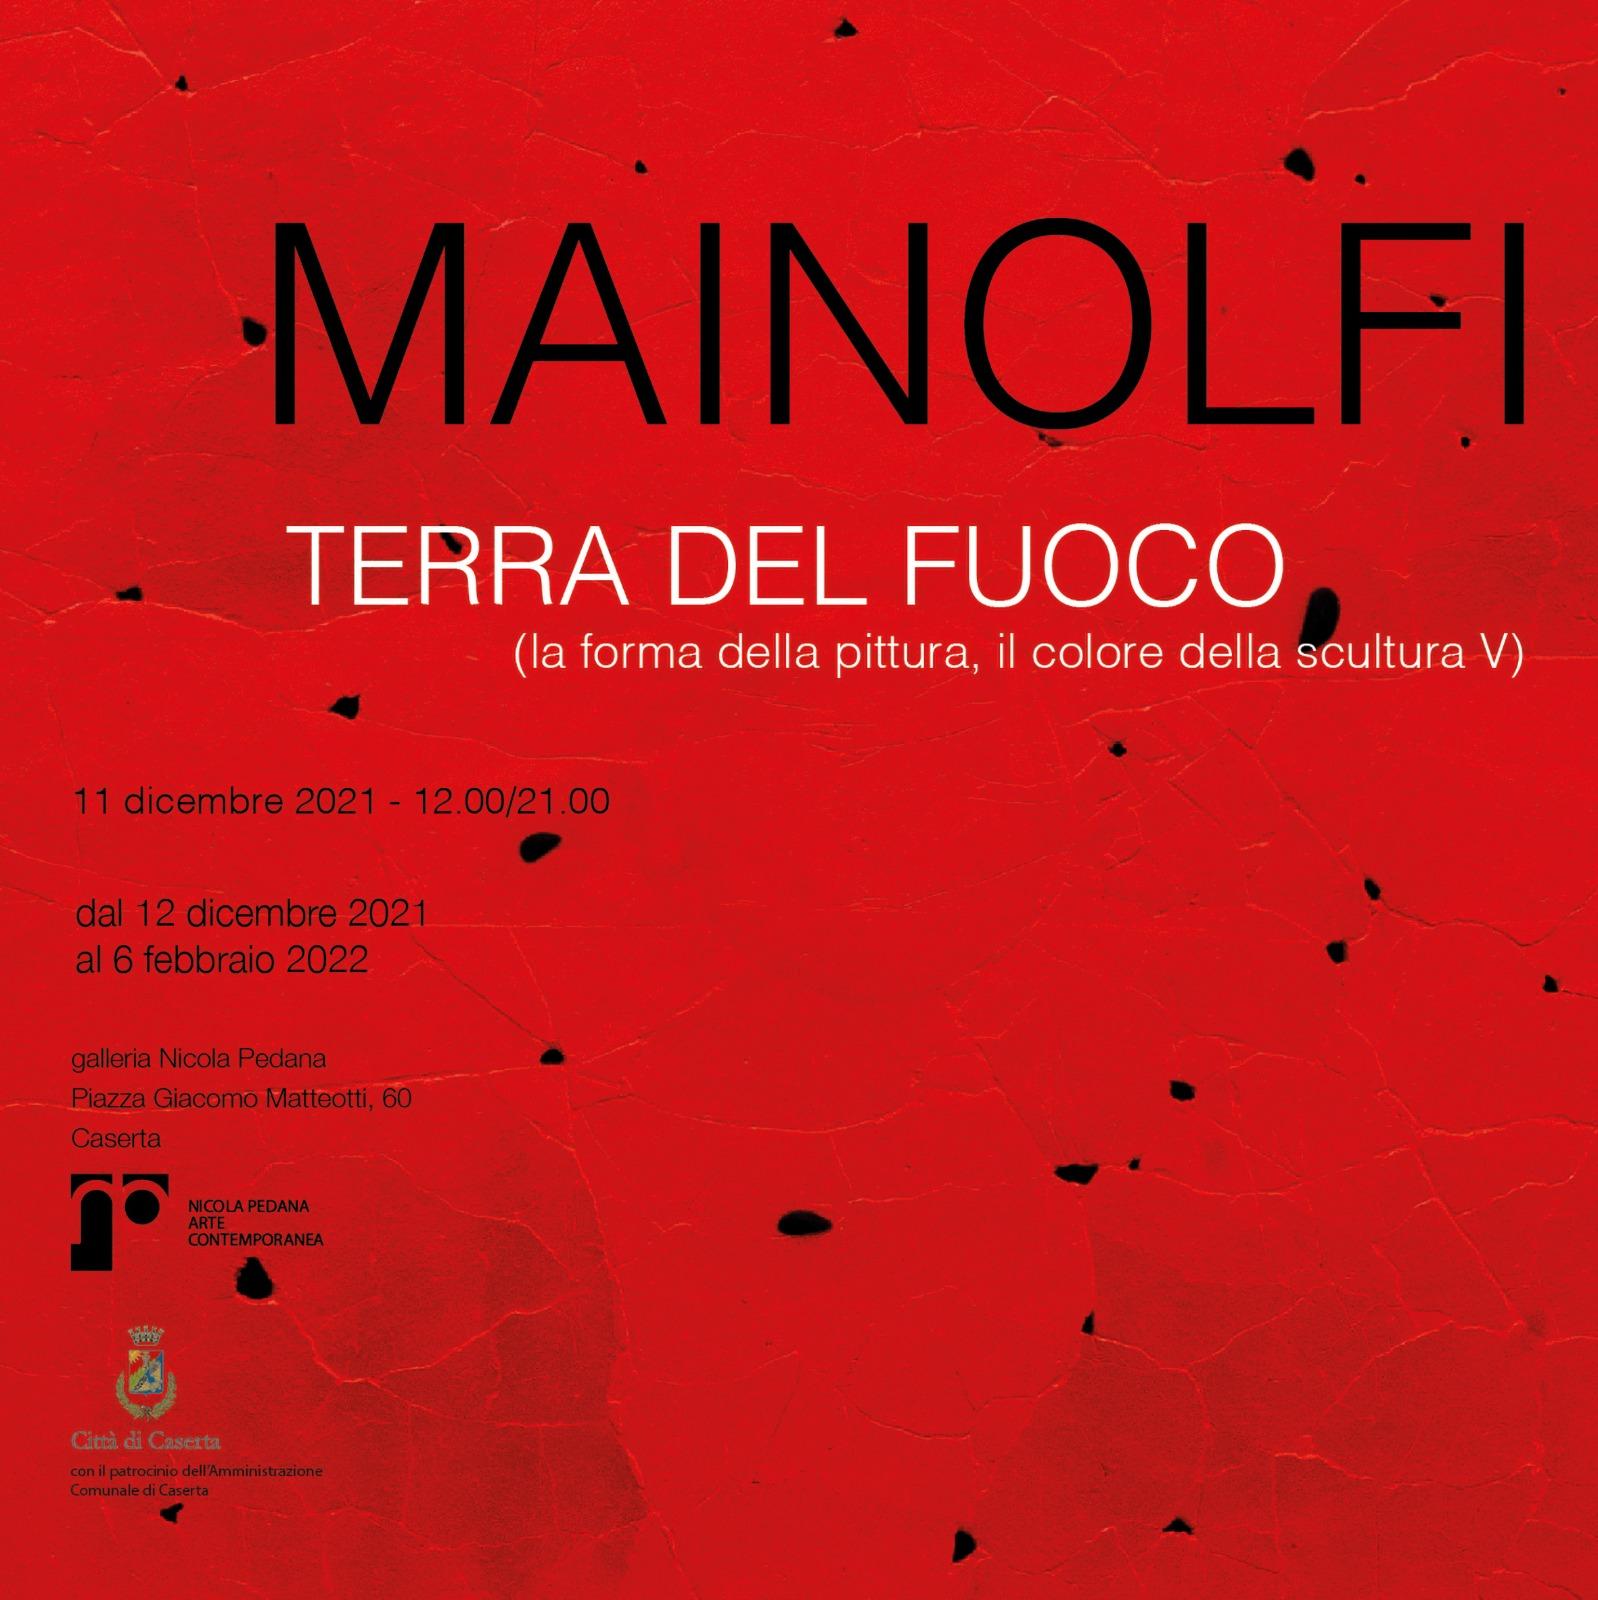 Luigi Mainolfi - TERRA DEL FUOCO (la forma della pittura, il colore della scultura V)